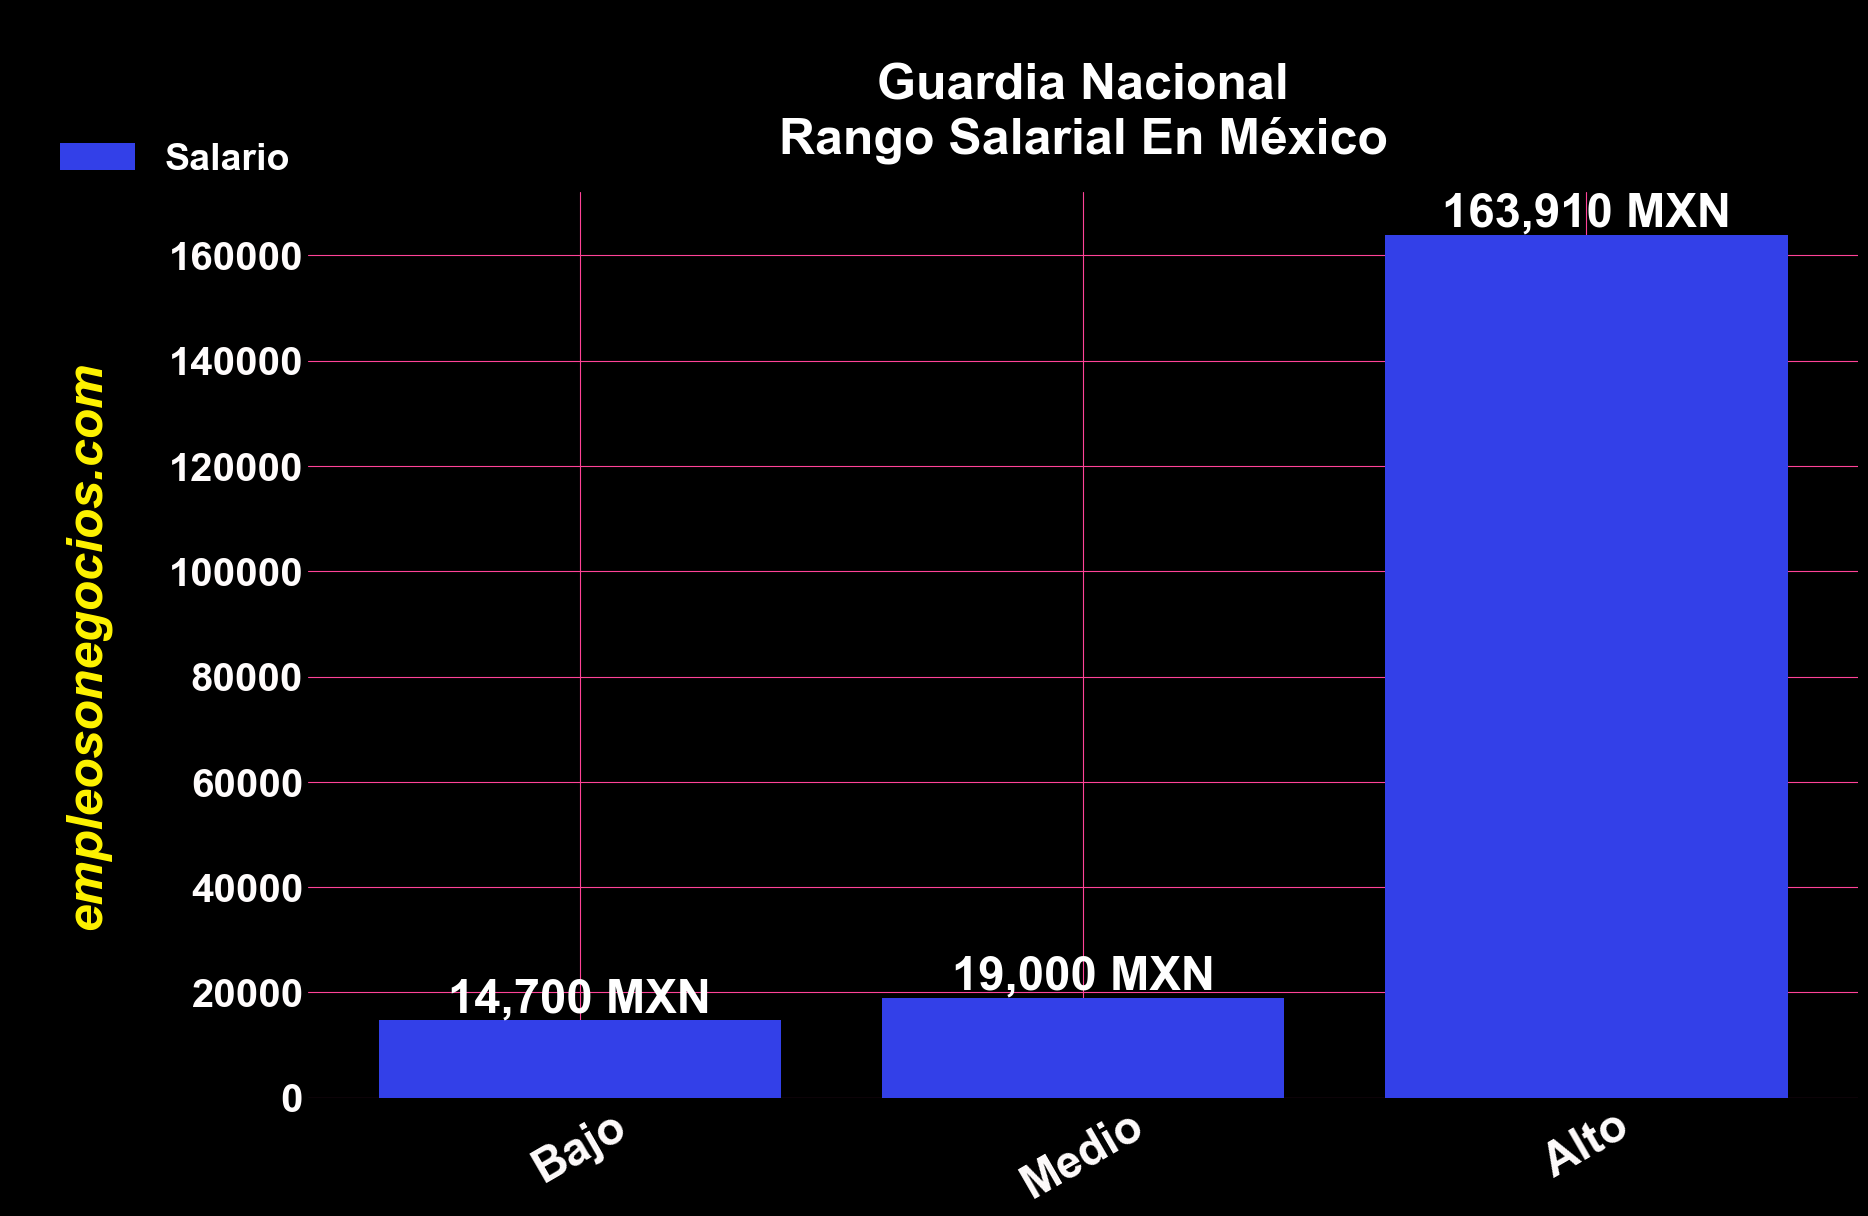 gráfica que muestra cuánto gana un guardia nacional en México según el sueldo bajo, medio y alto.